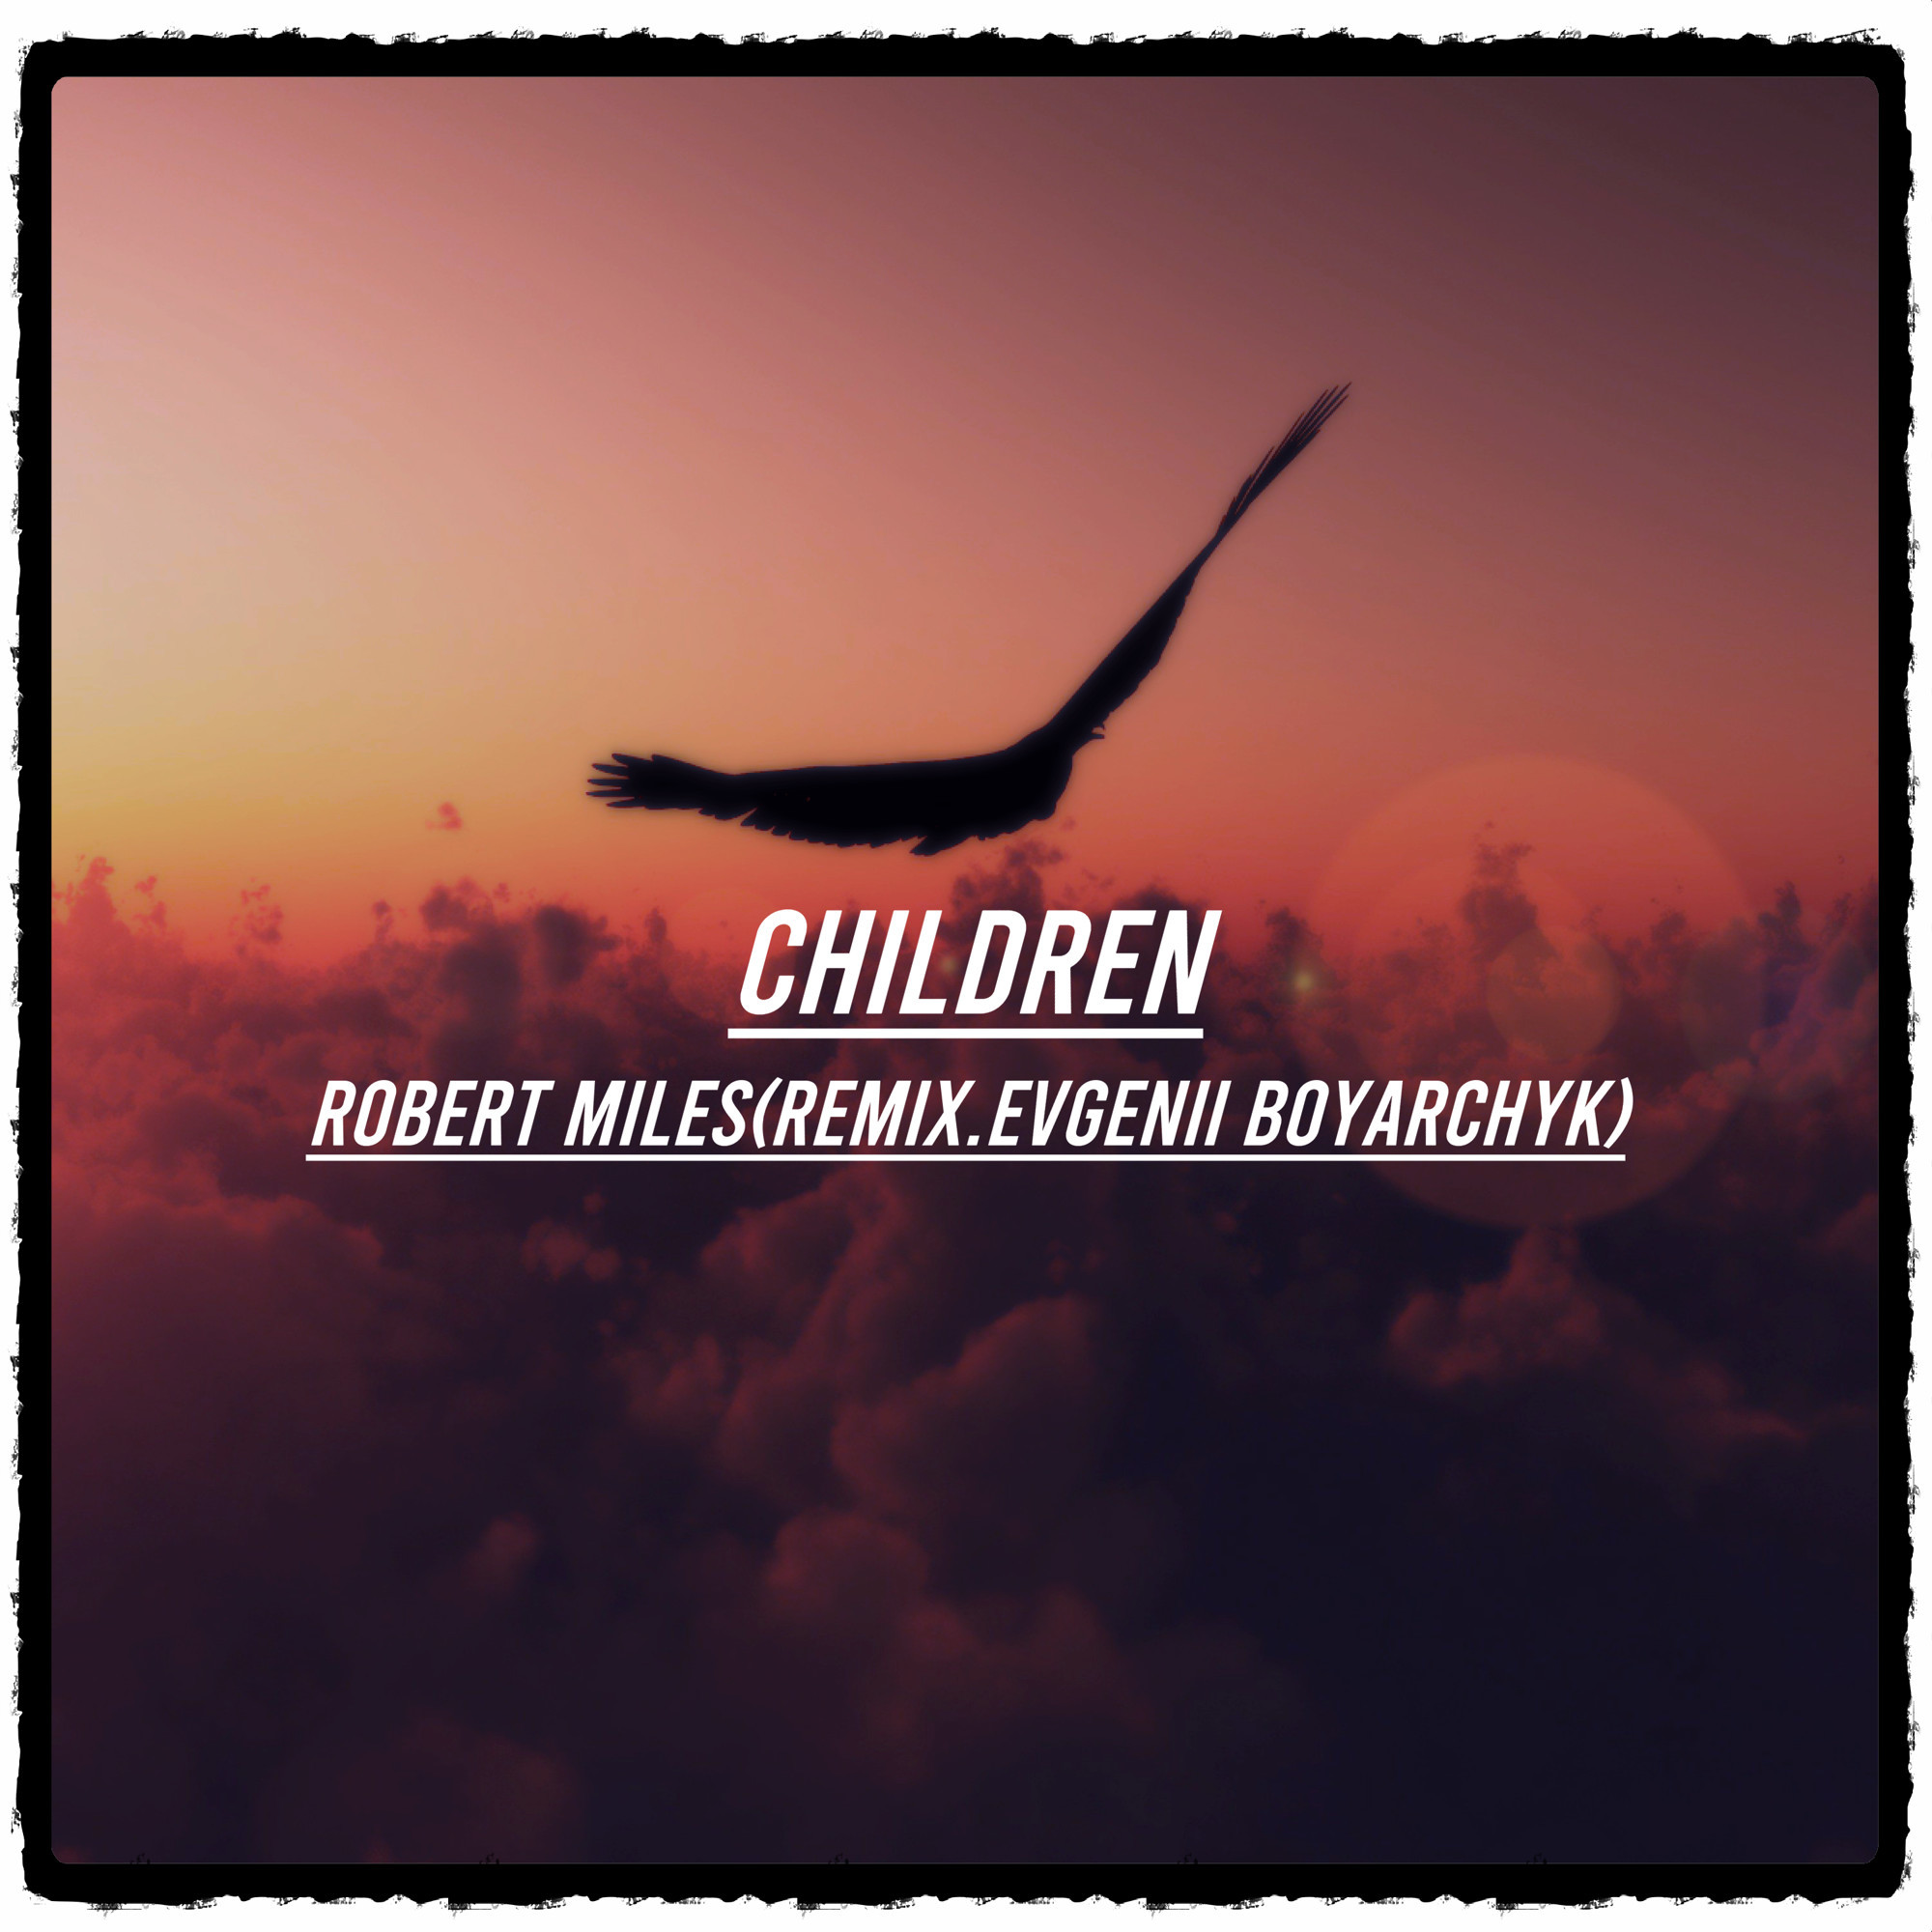 Robert miles remix. Robert Miles children 2020. Robert Miles - children (Dmitry Air Remix).